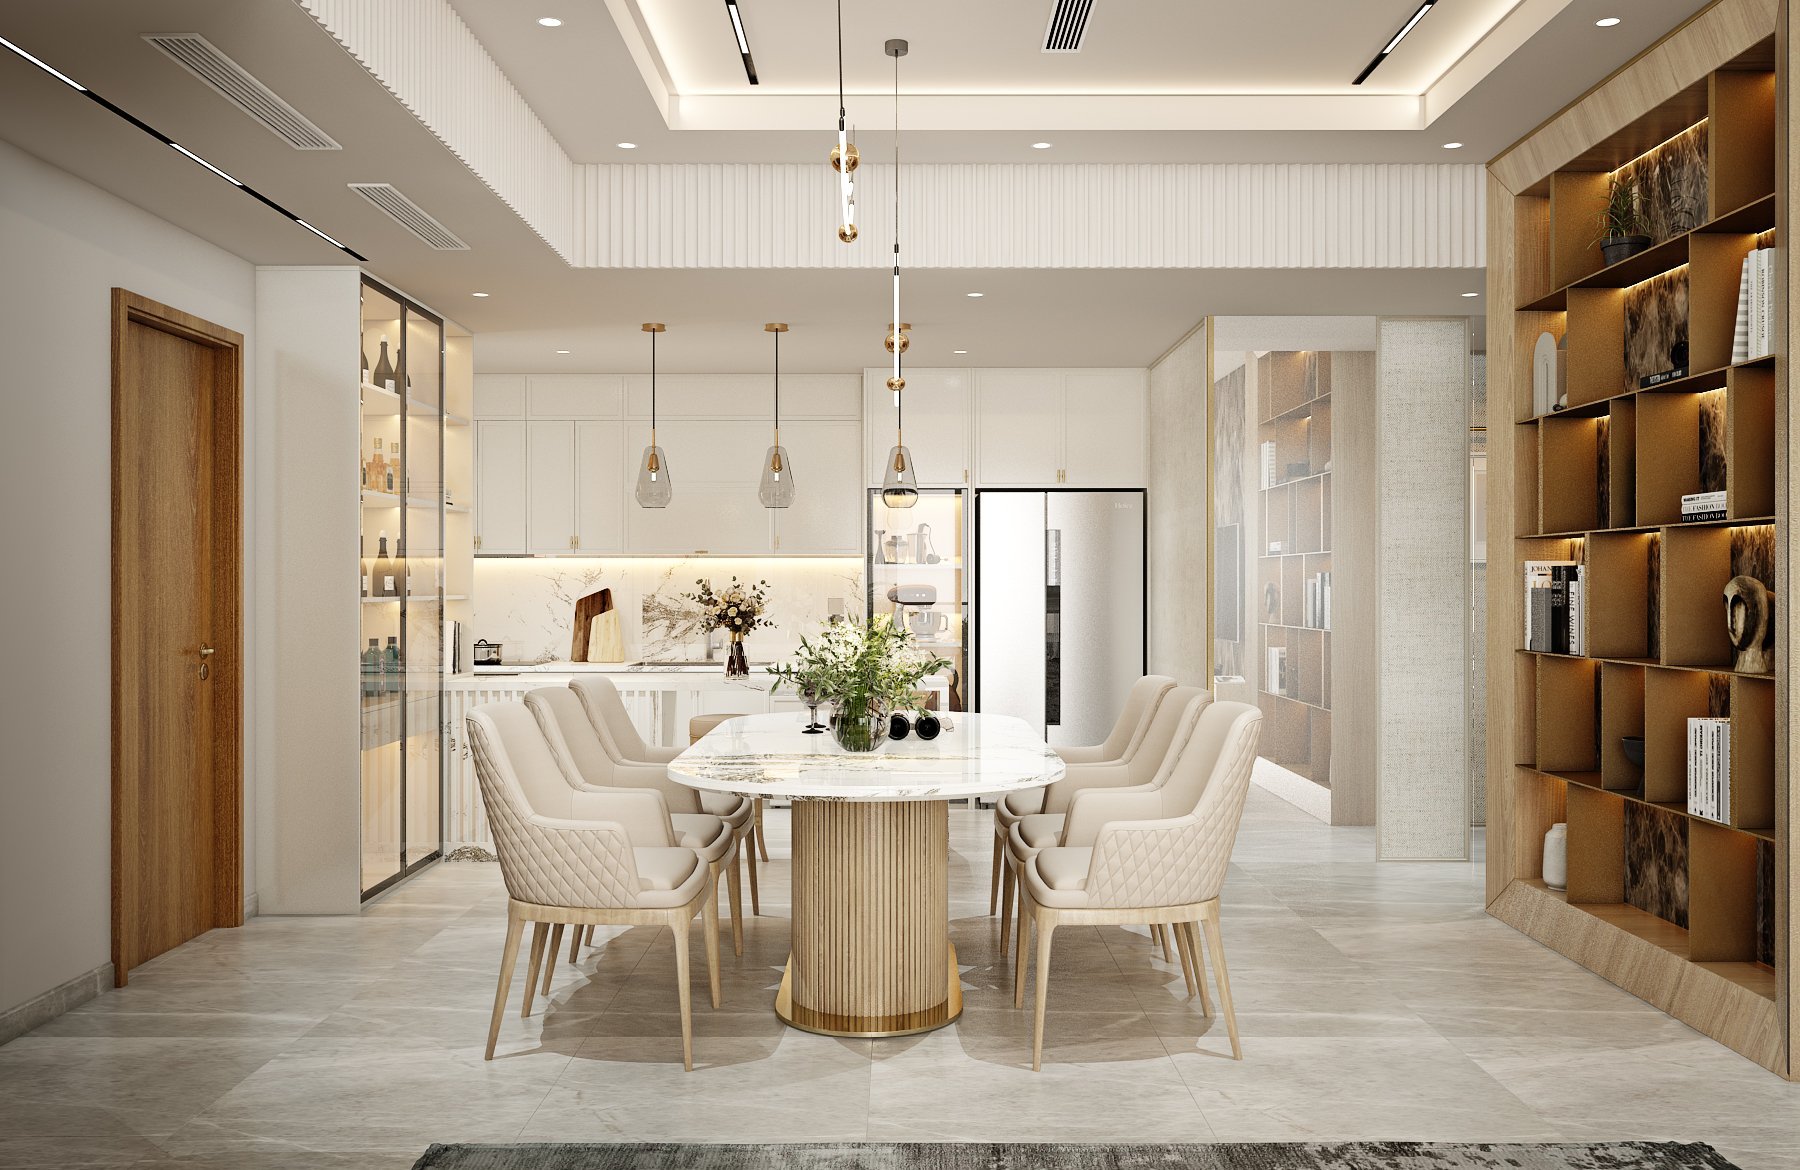 Các đồ nội thất phòng ăn có sự kết hợp giữa bàn mặt đá marble kèm inox mạ vàng cùng ghế được phủ bằng chất liệu da và cả không gian trở nên rực rỡ sang trọng nhờ hệ đèn thả trần độc đáo.